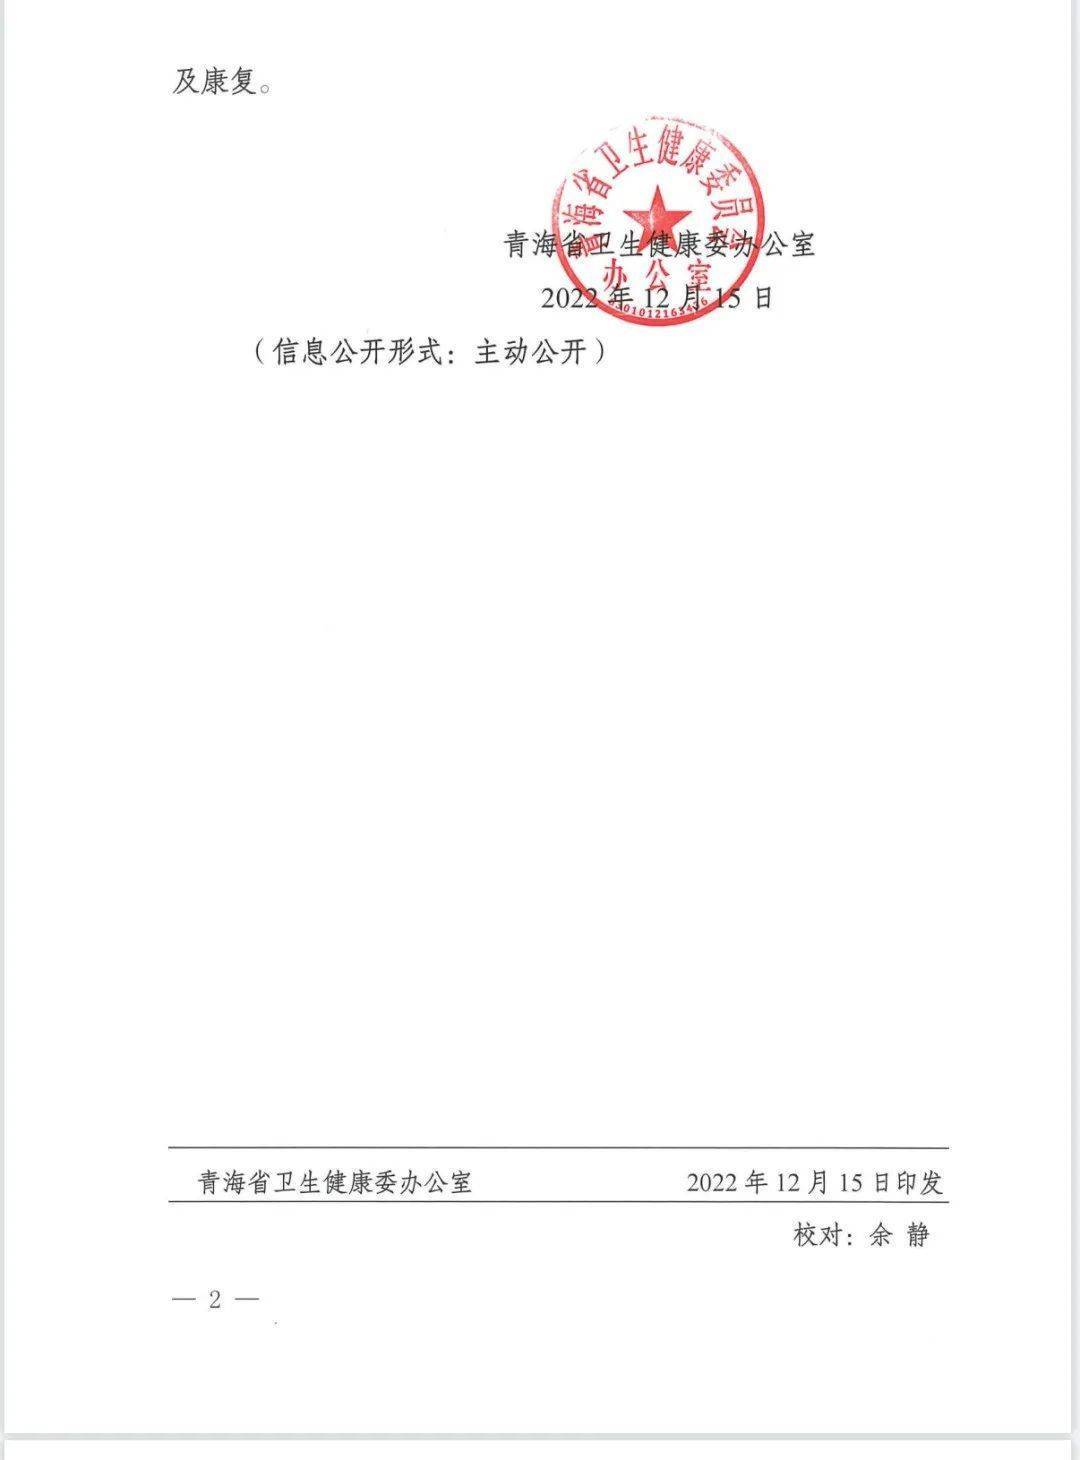 青海发布新冠病毒感染者居家藏医药干预指引，金诃藏药产品被推荐